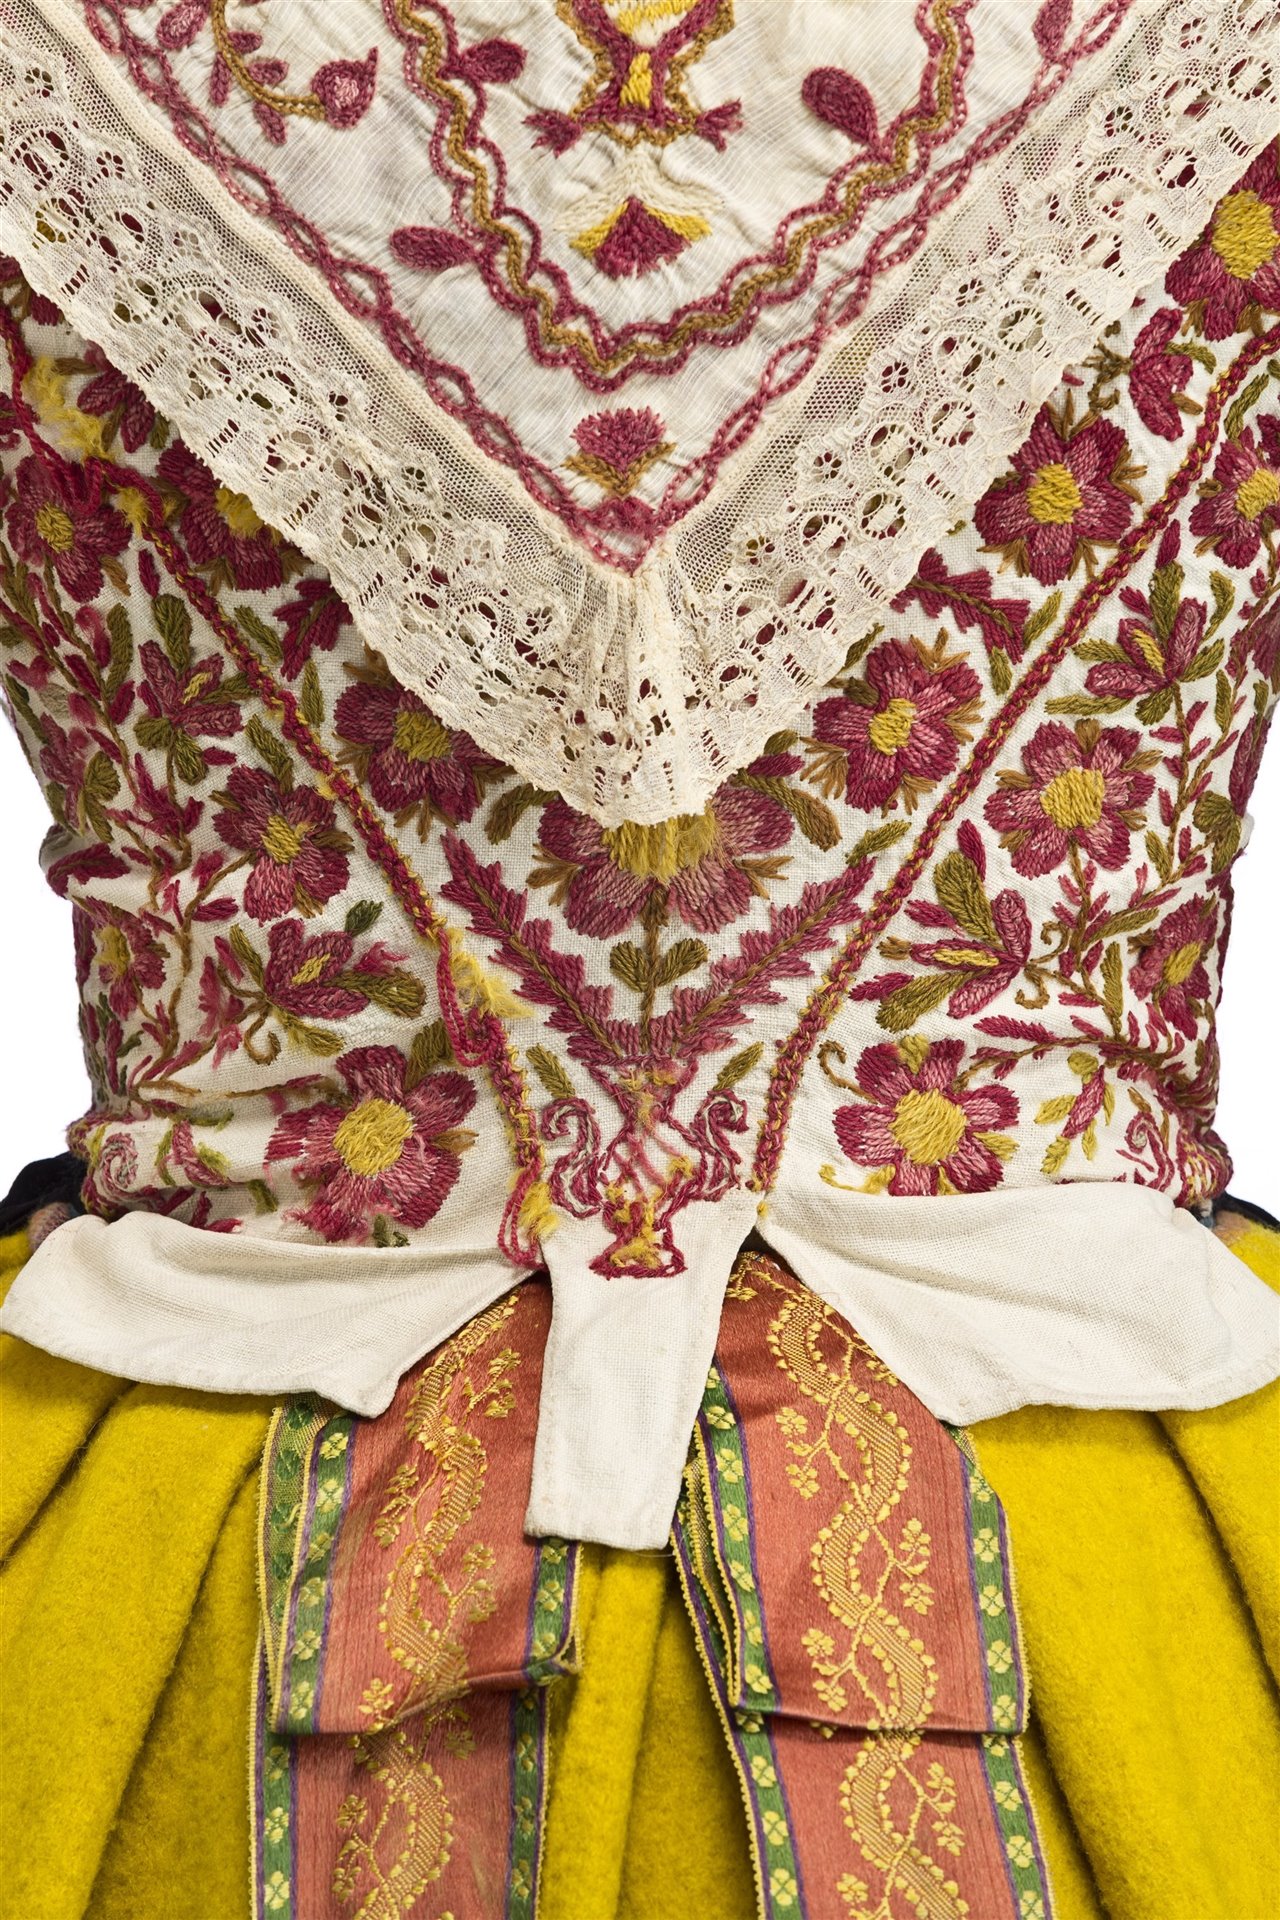 Traje festivo de 1870, rico y muy colorido, cuyos bordados con lanas de colores son característicos de la escuela de bordado de Zamora, en concreto del Alfoz de Toro. 